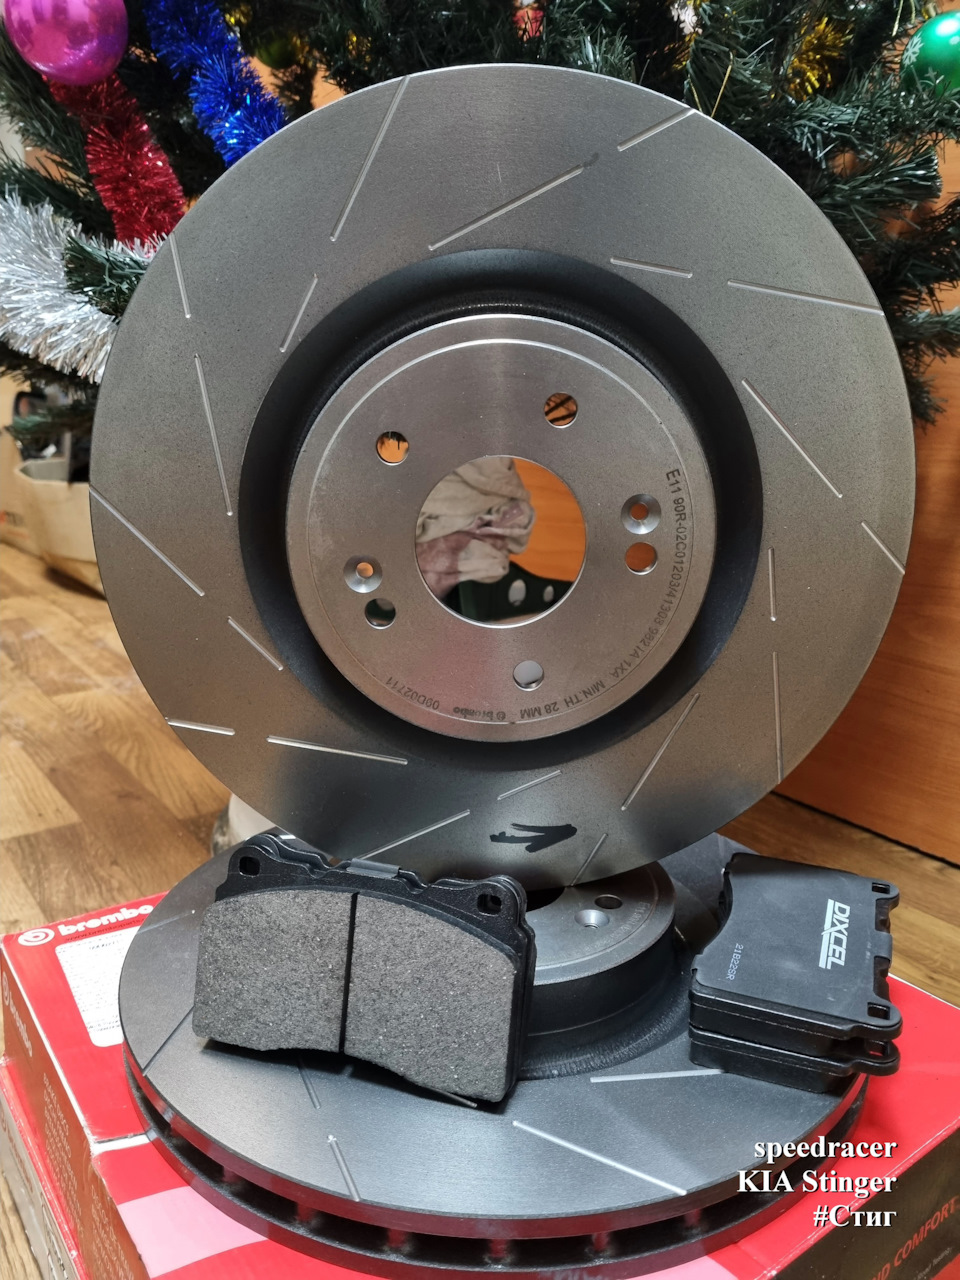 Минимальная толщина тормозных дисков Киа спортейдж 4 поколения